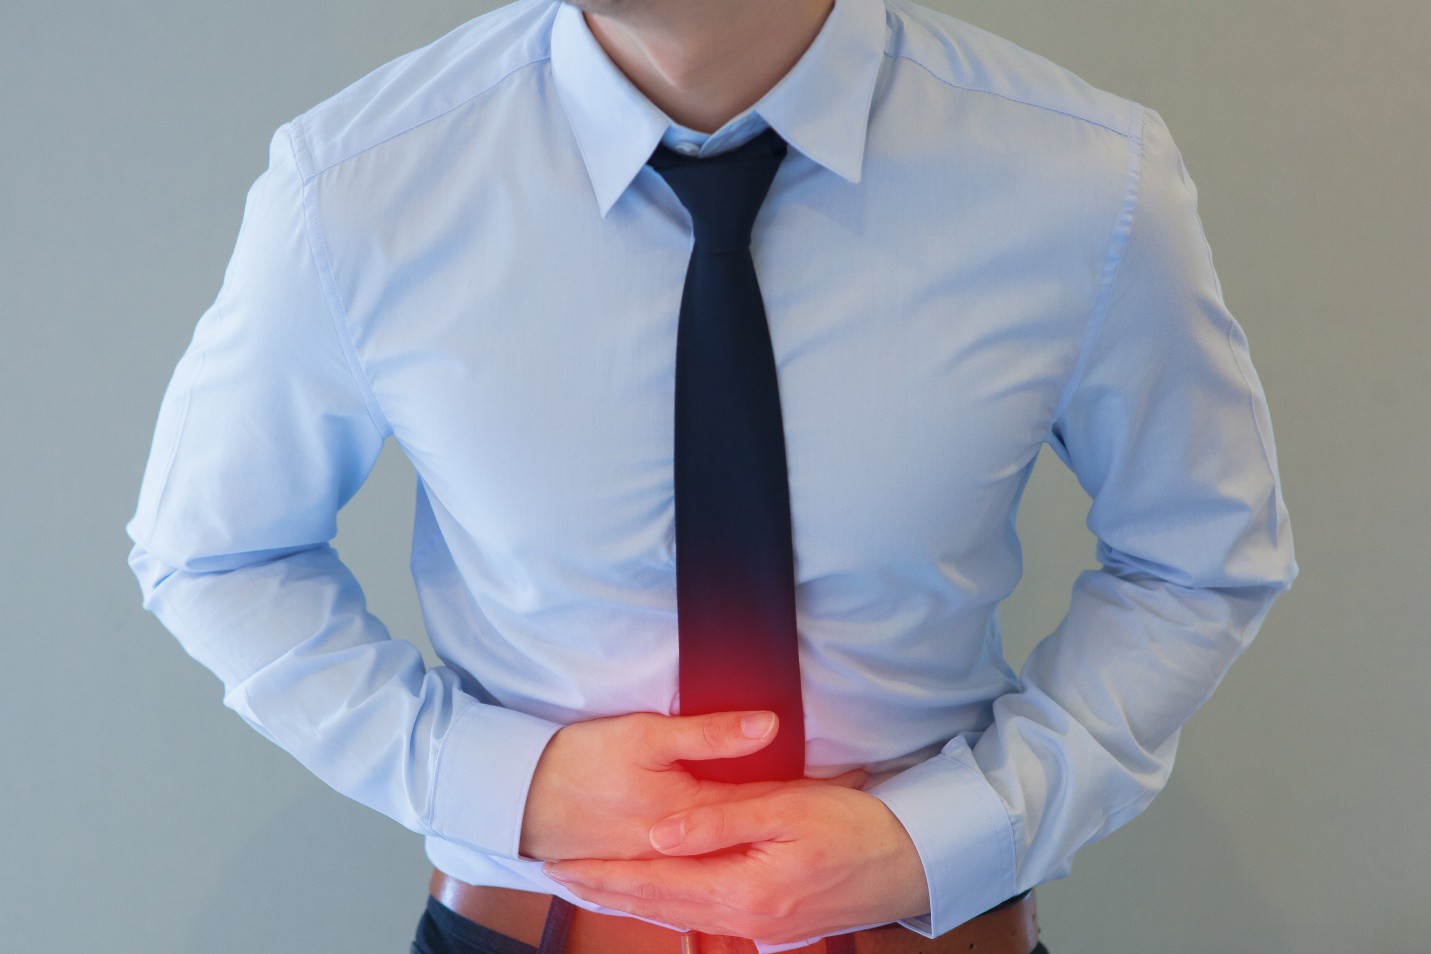 Cẩn thận với kiểu đau bụng này, có thể đó là dấu hiệu của viêm loét đại tràng - 1